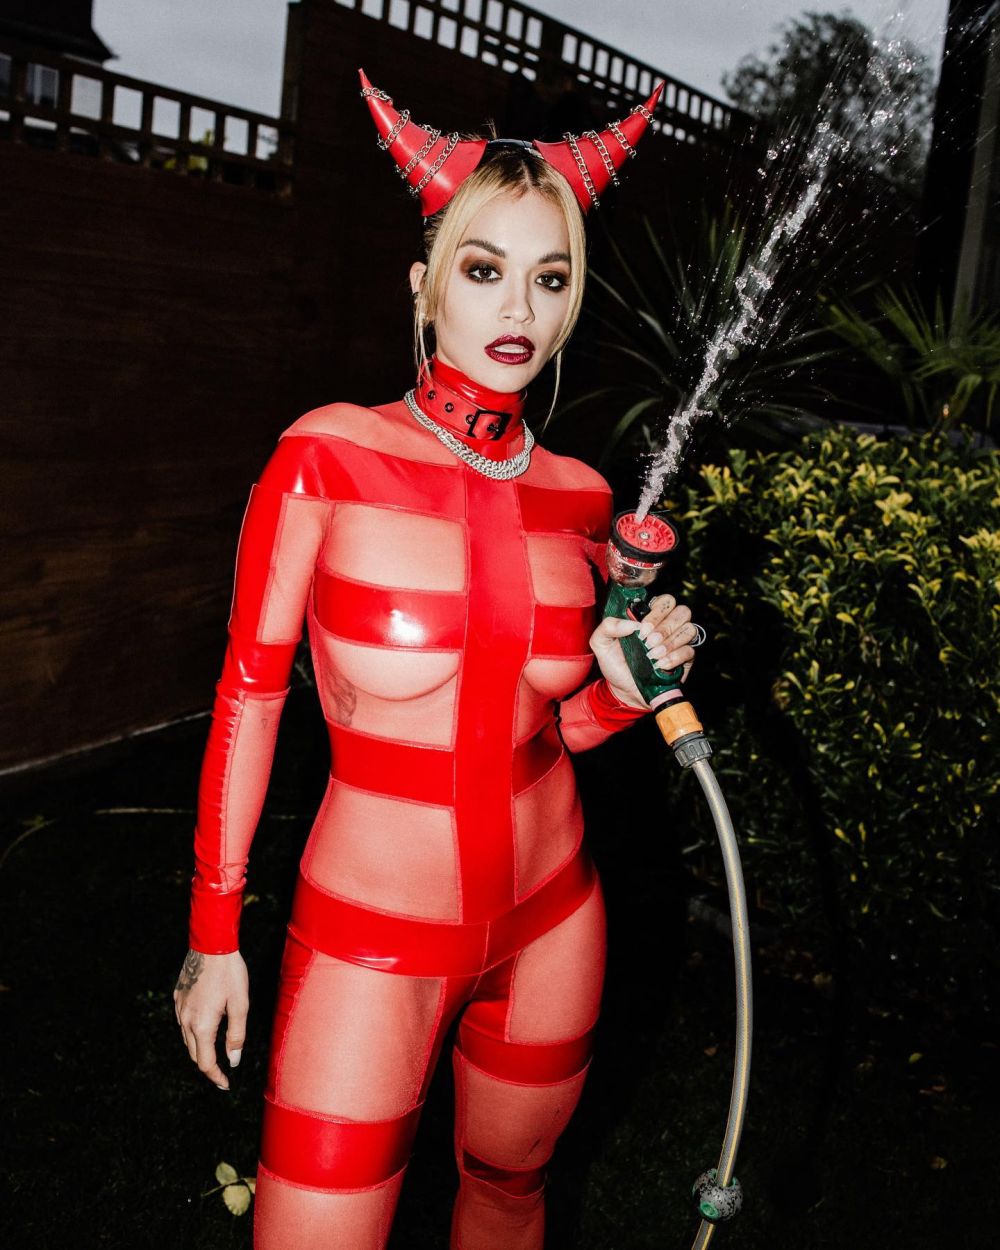 Costumatie de Halloween sau de filme pentru adulti?! Rita Ora a socat internetul: pozele care fac inconjurul retelelor sociale_9